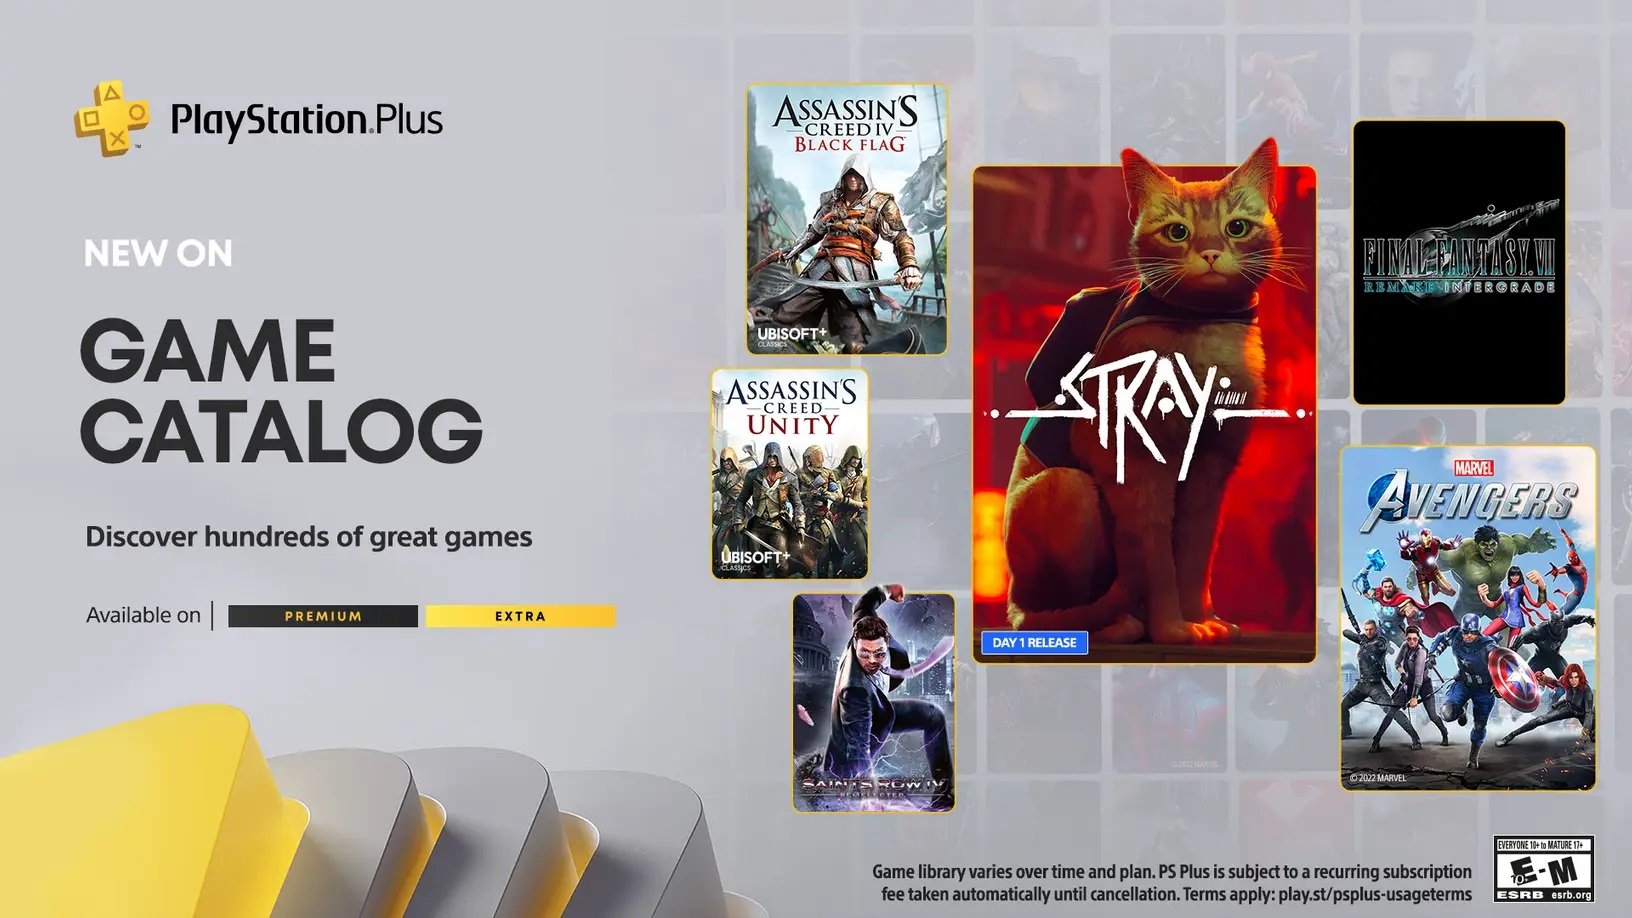 PlayStation Plus Extra: Assinatura de 1 mês